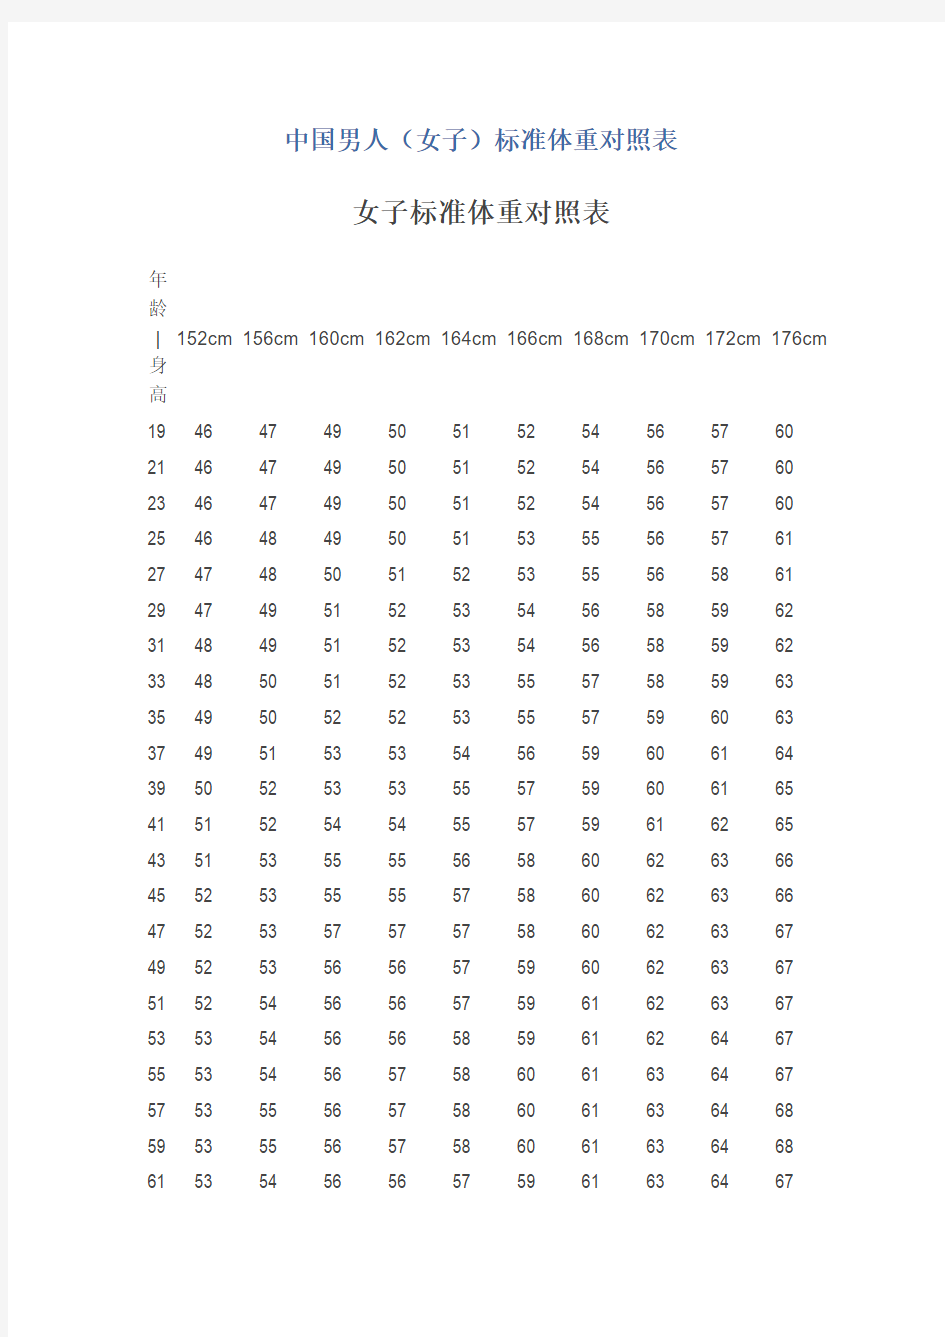 中国男人(女子)标准体重对照表